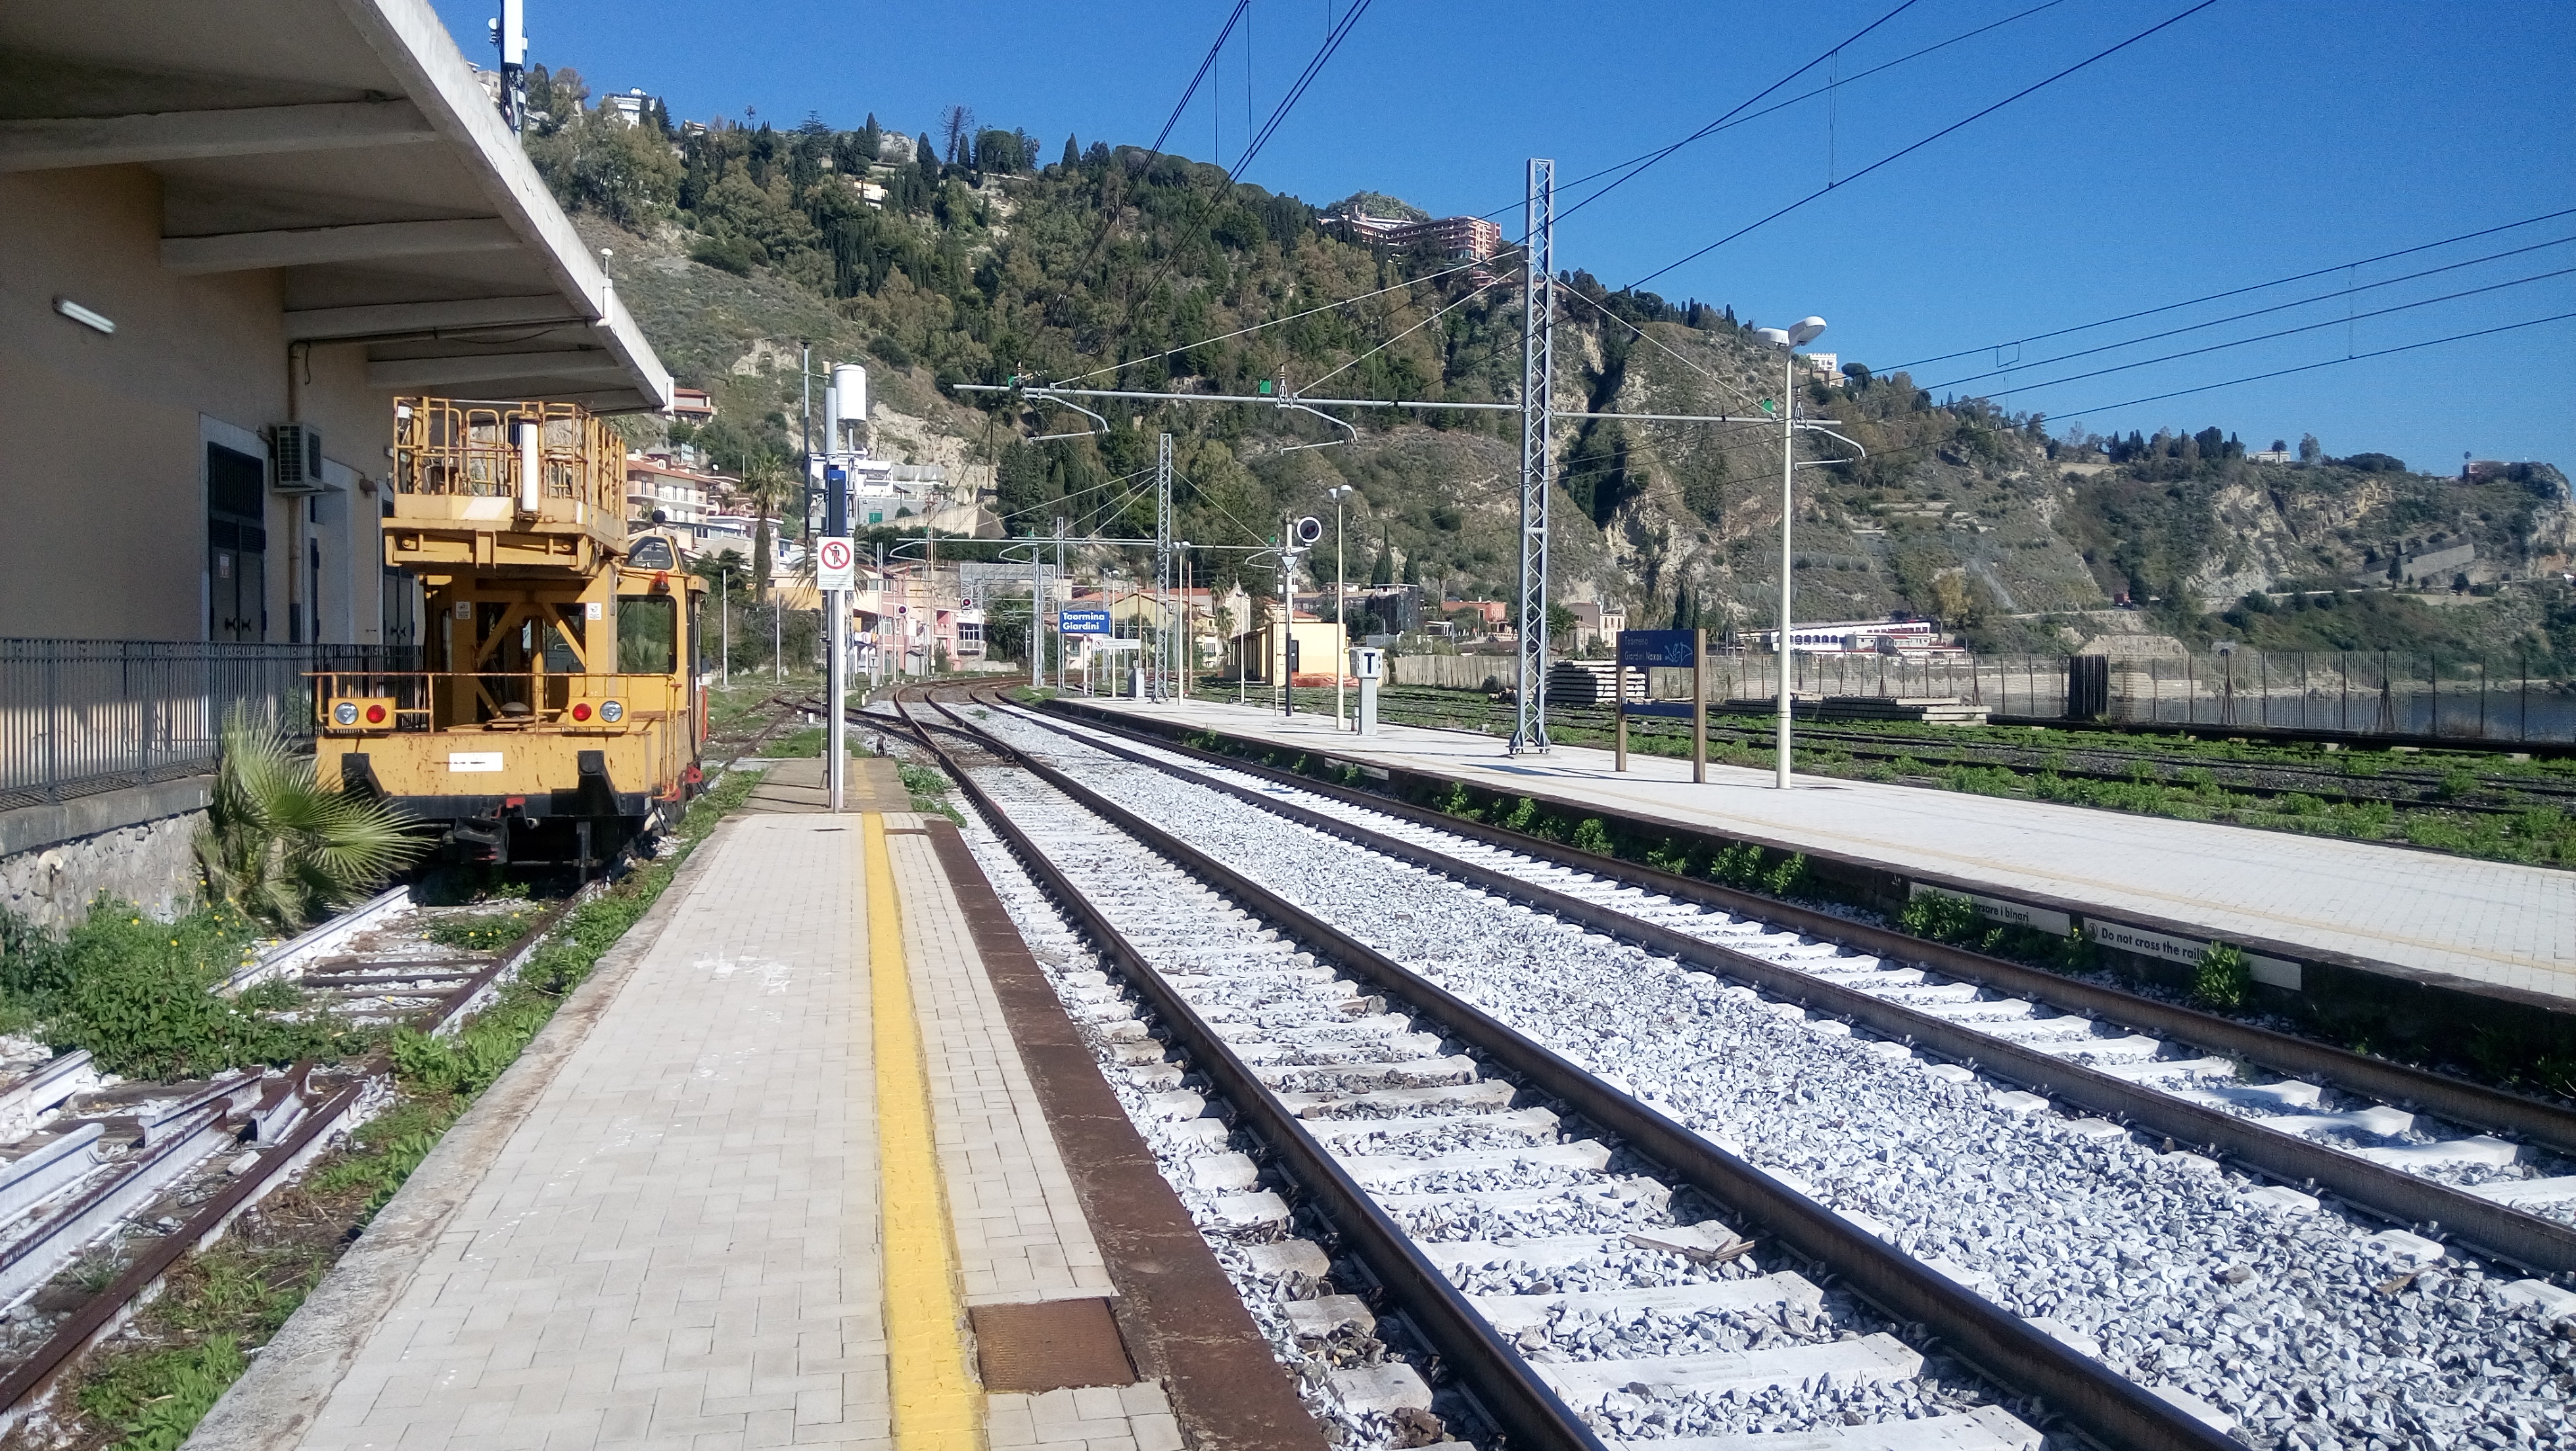 Taormina avrà due stazioni ferroviarie, il sindaco Giardina: "Splendido progetto"